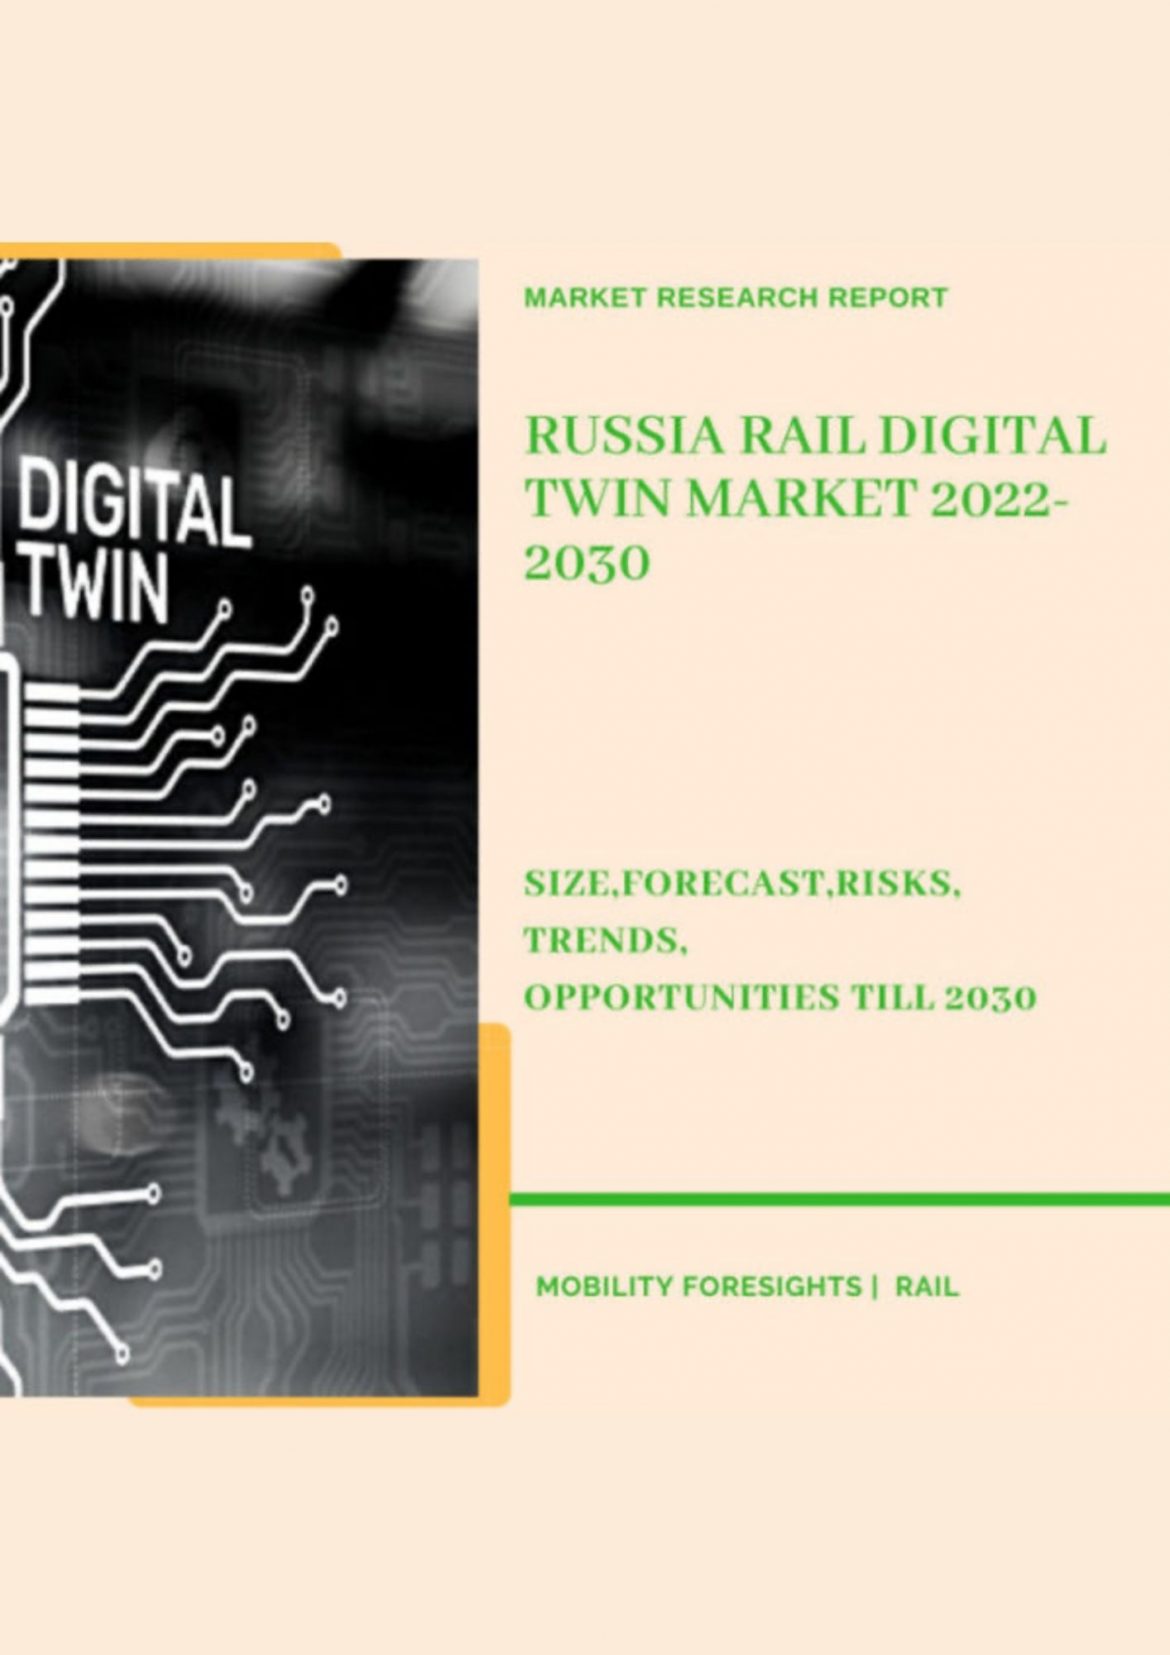 Russia Rail Digital Twin Market 2022-2030